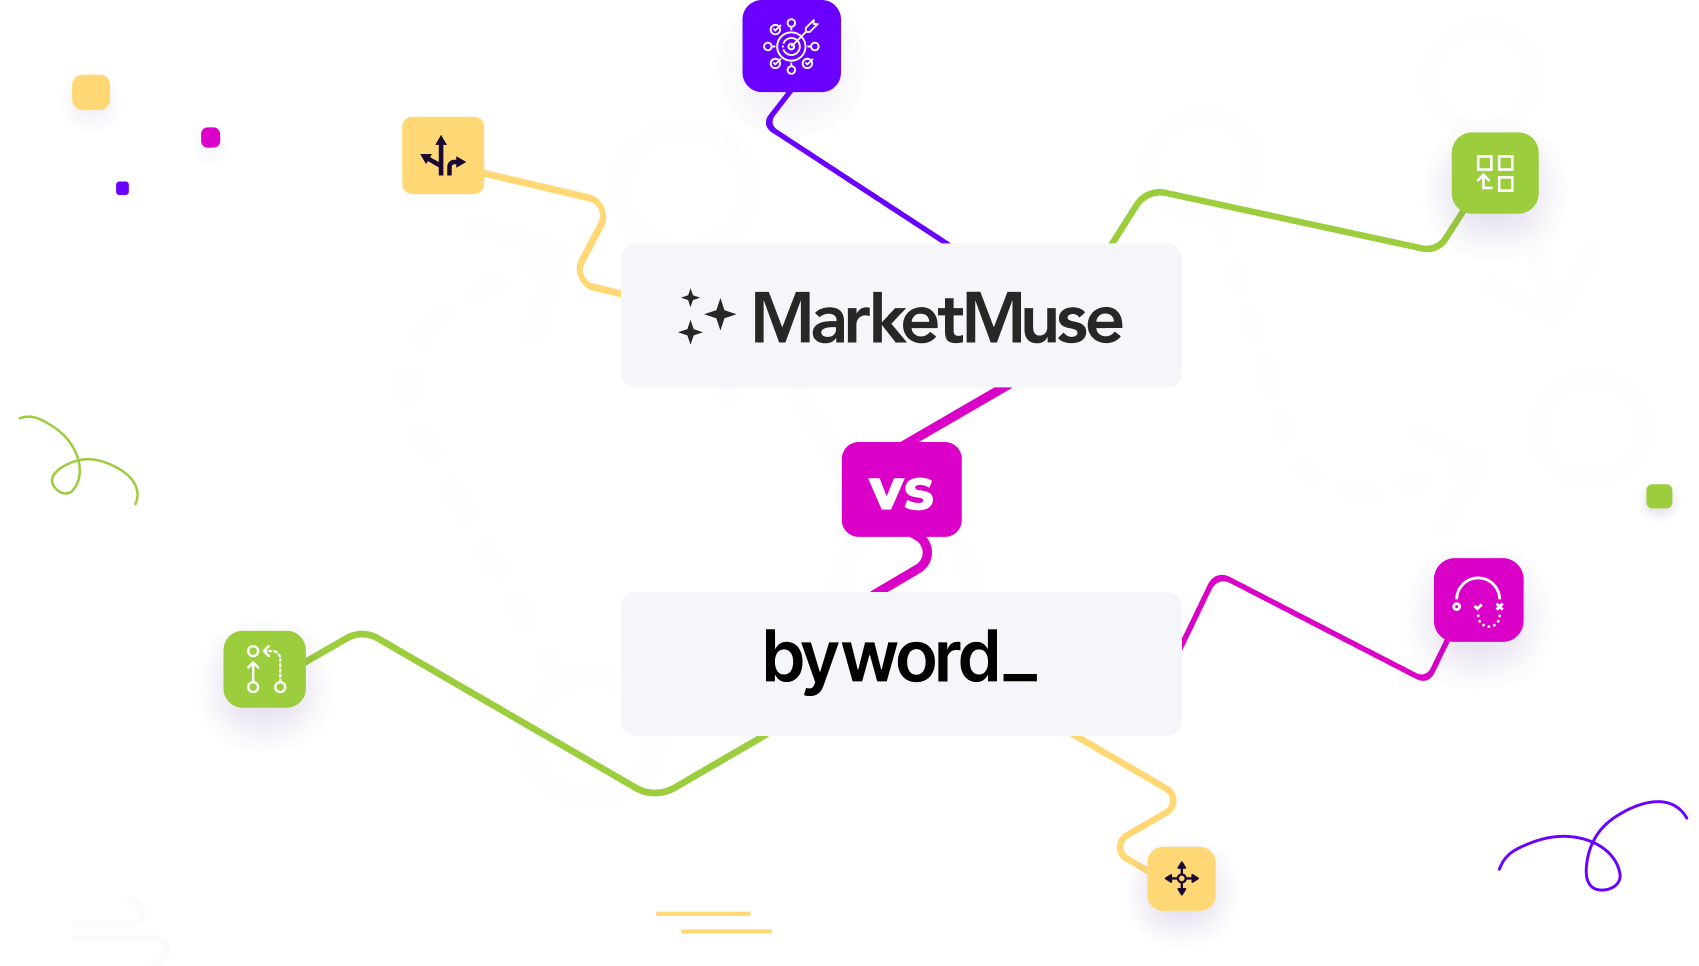 marketmuse vs byword